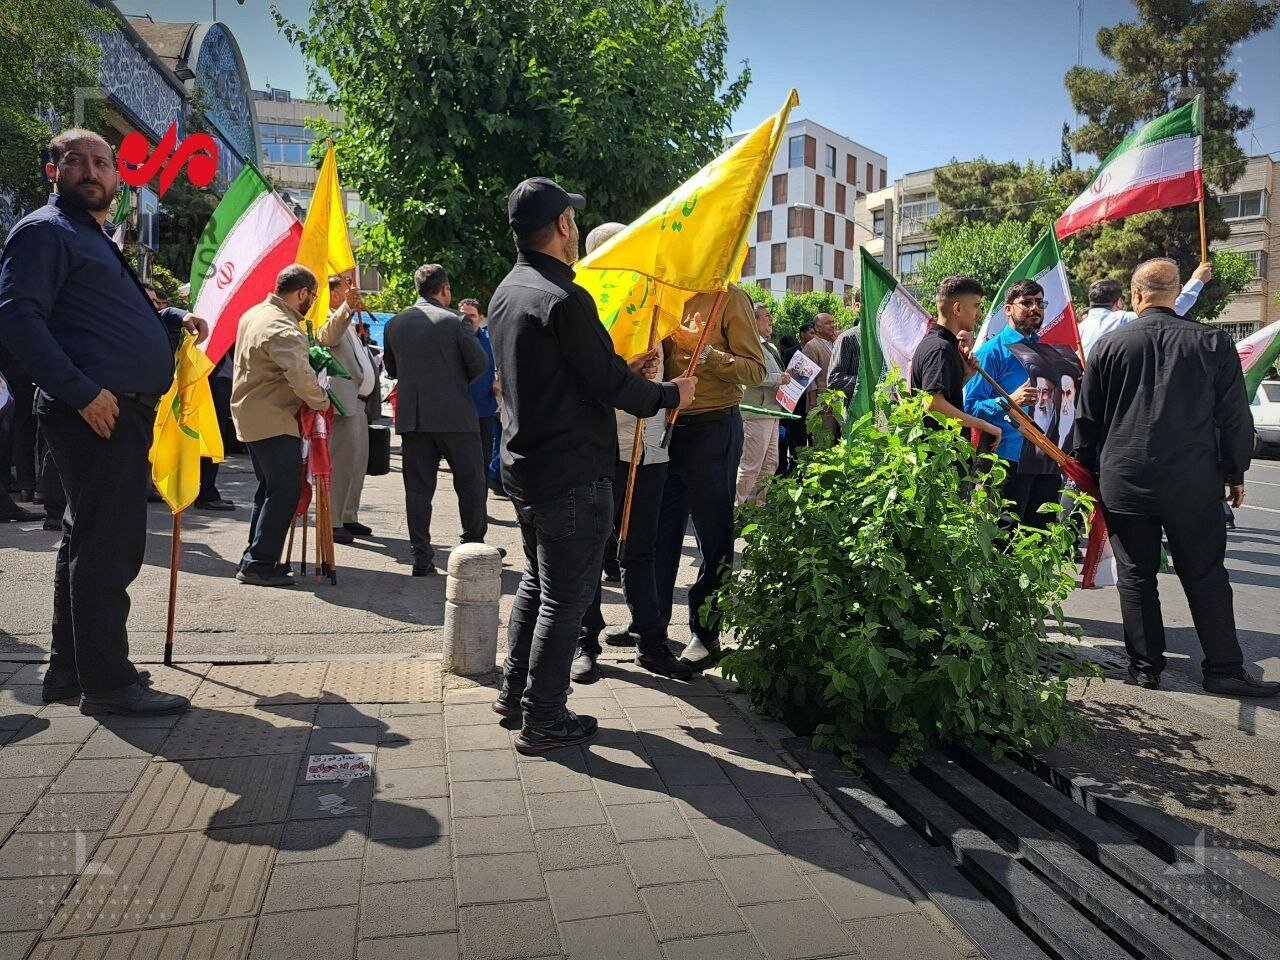 تصویری از تجمع طرفداران در جلوی وزارت کشور